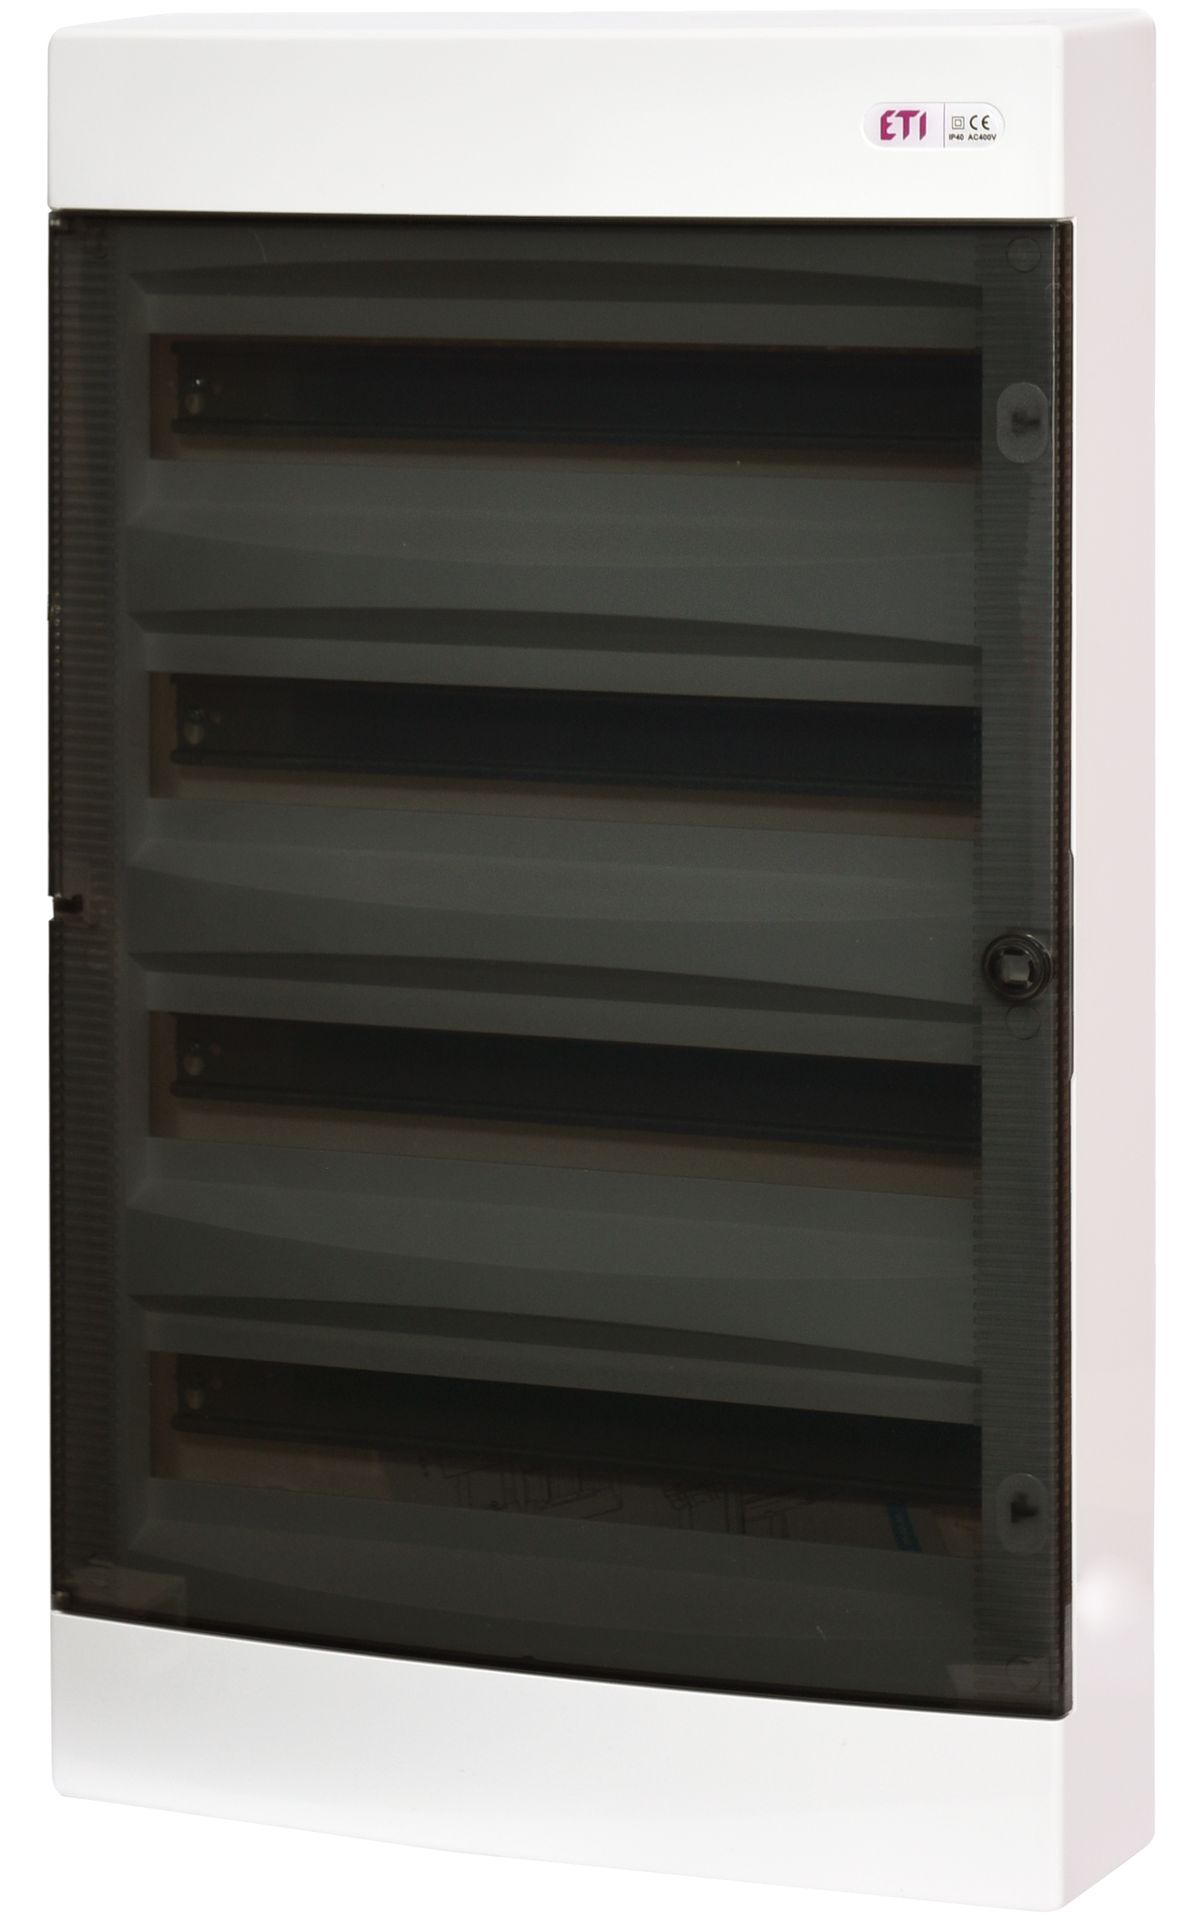 ECT 4x18PT DIDO-E 4x18 modulos elosztó szekrény, falra szerelhető, átlátszó ajtóval